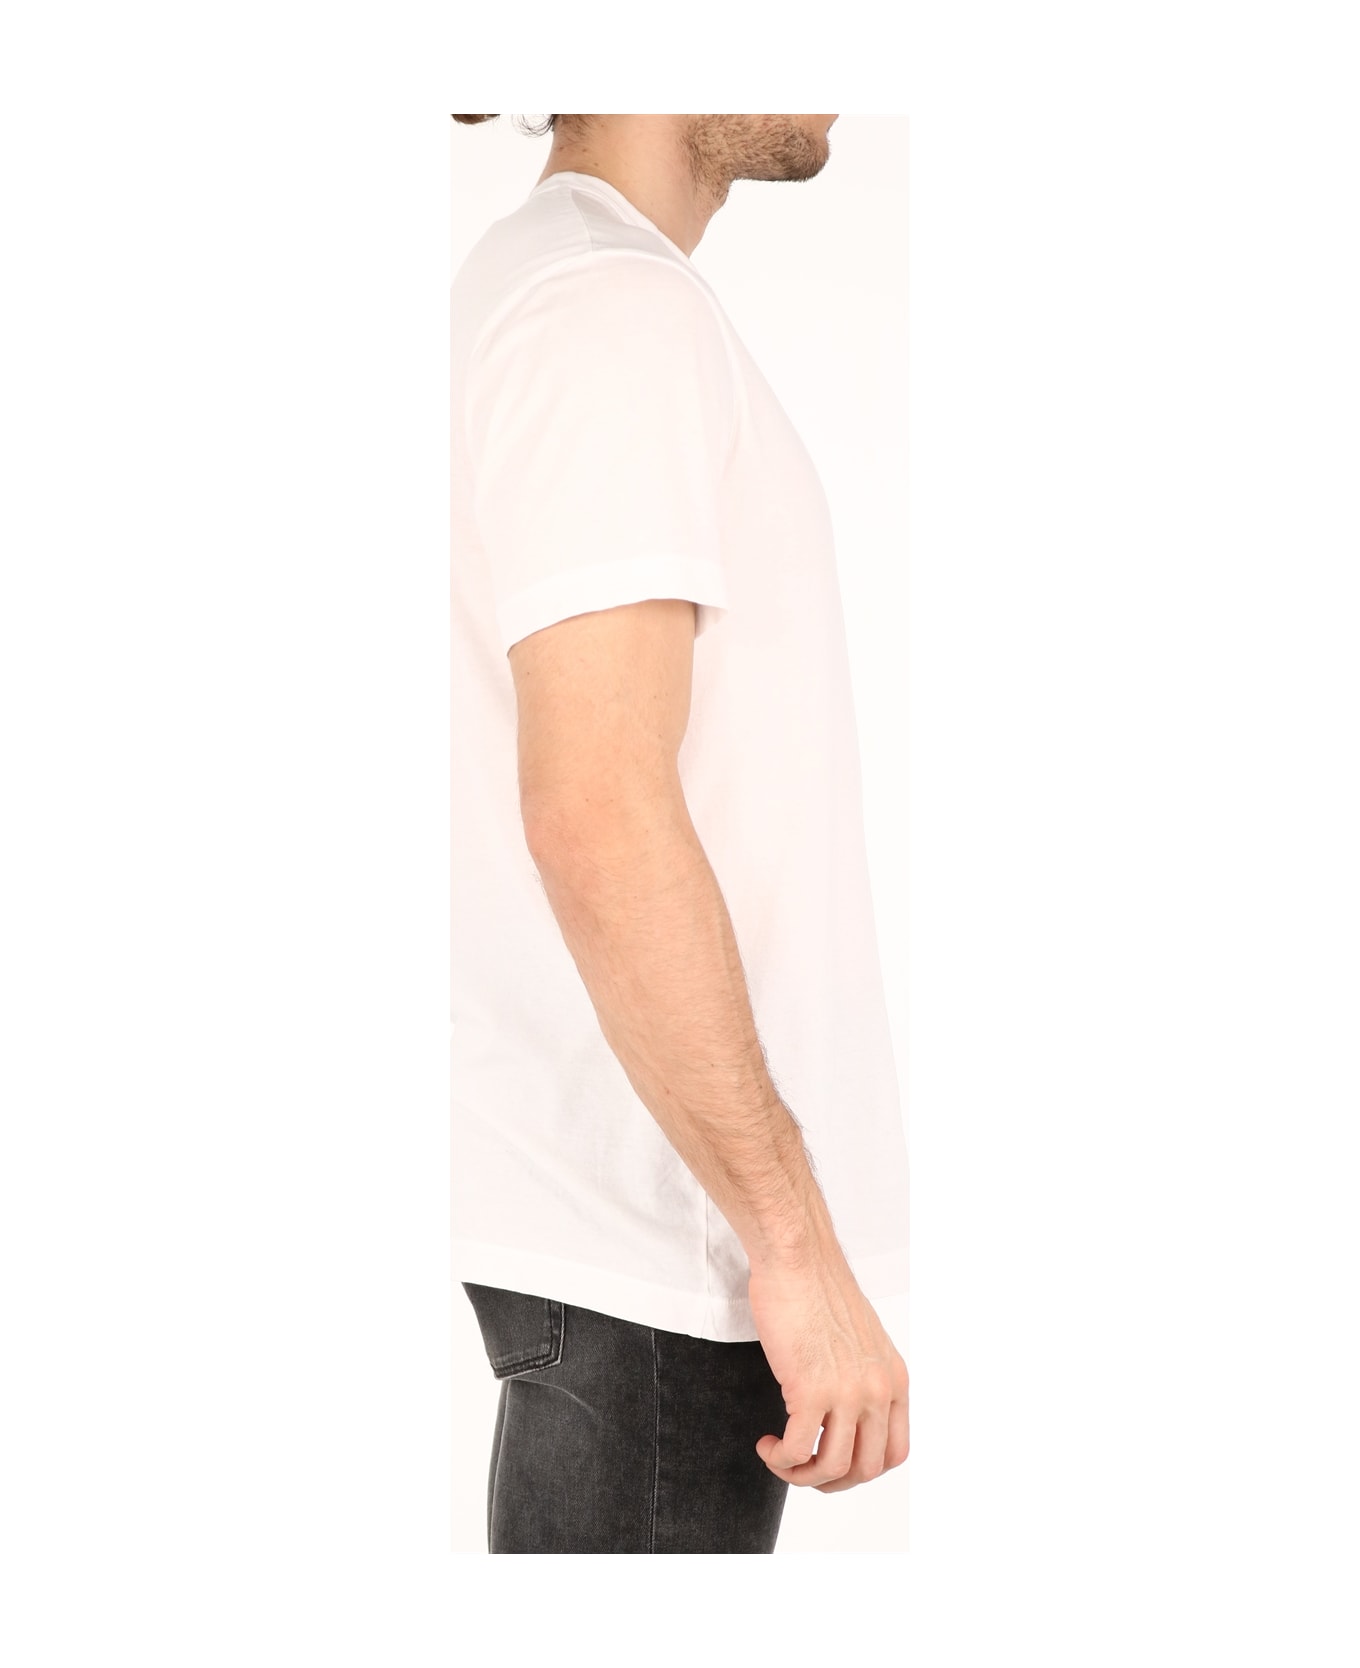 James Perse White Cotton T-shirt - WHITE